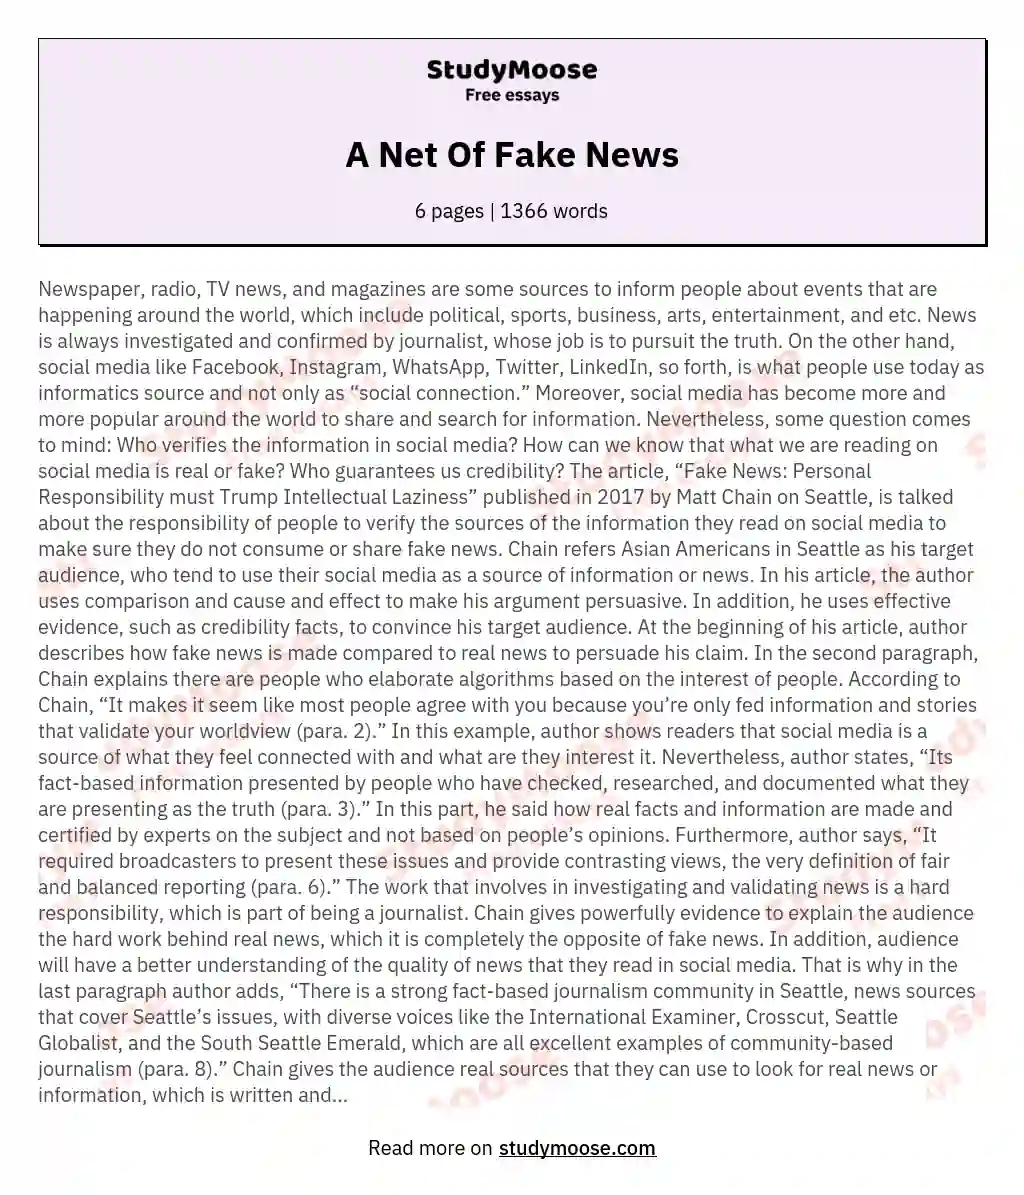 A Net Of Fake News essay